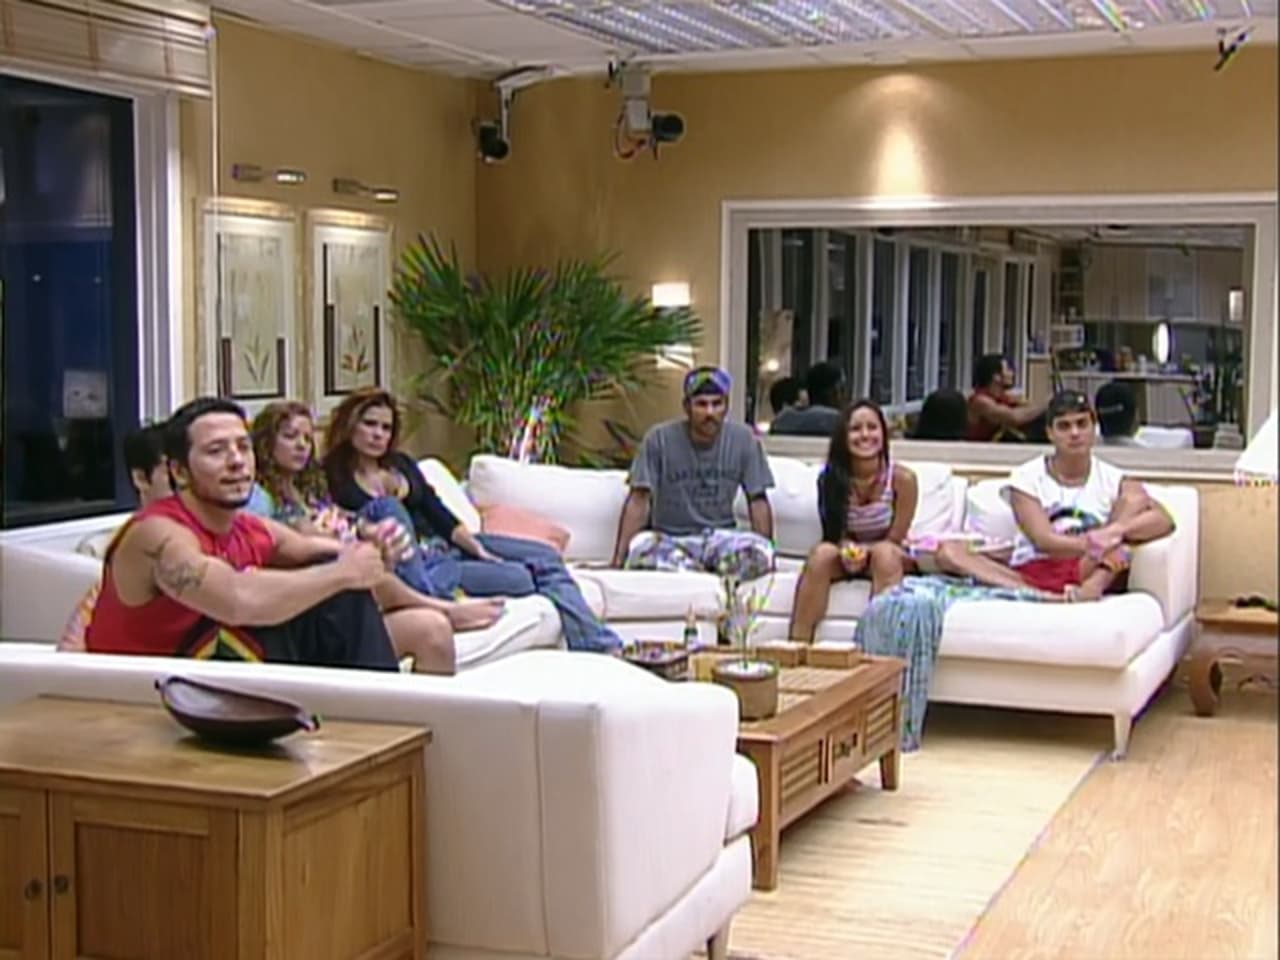 Big Brother Brasil - Season 3 Episode 48 : Episode 48